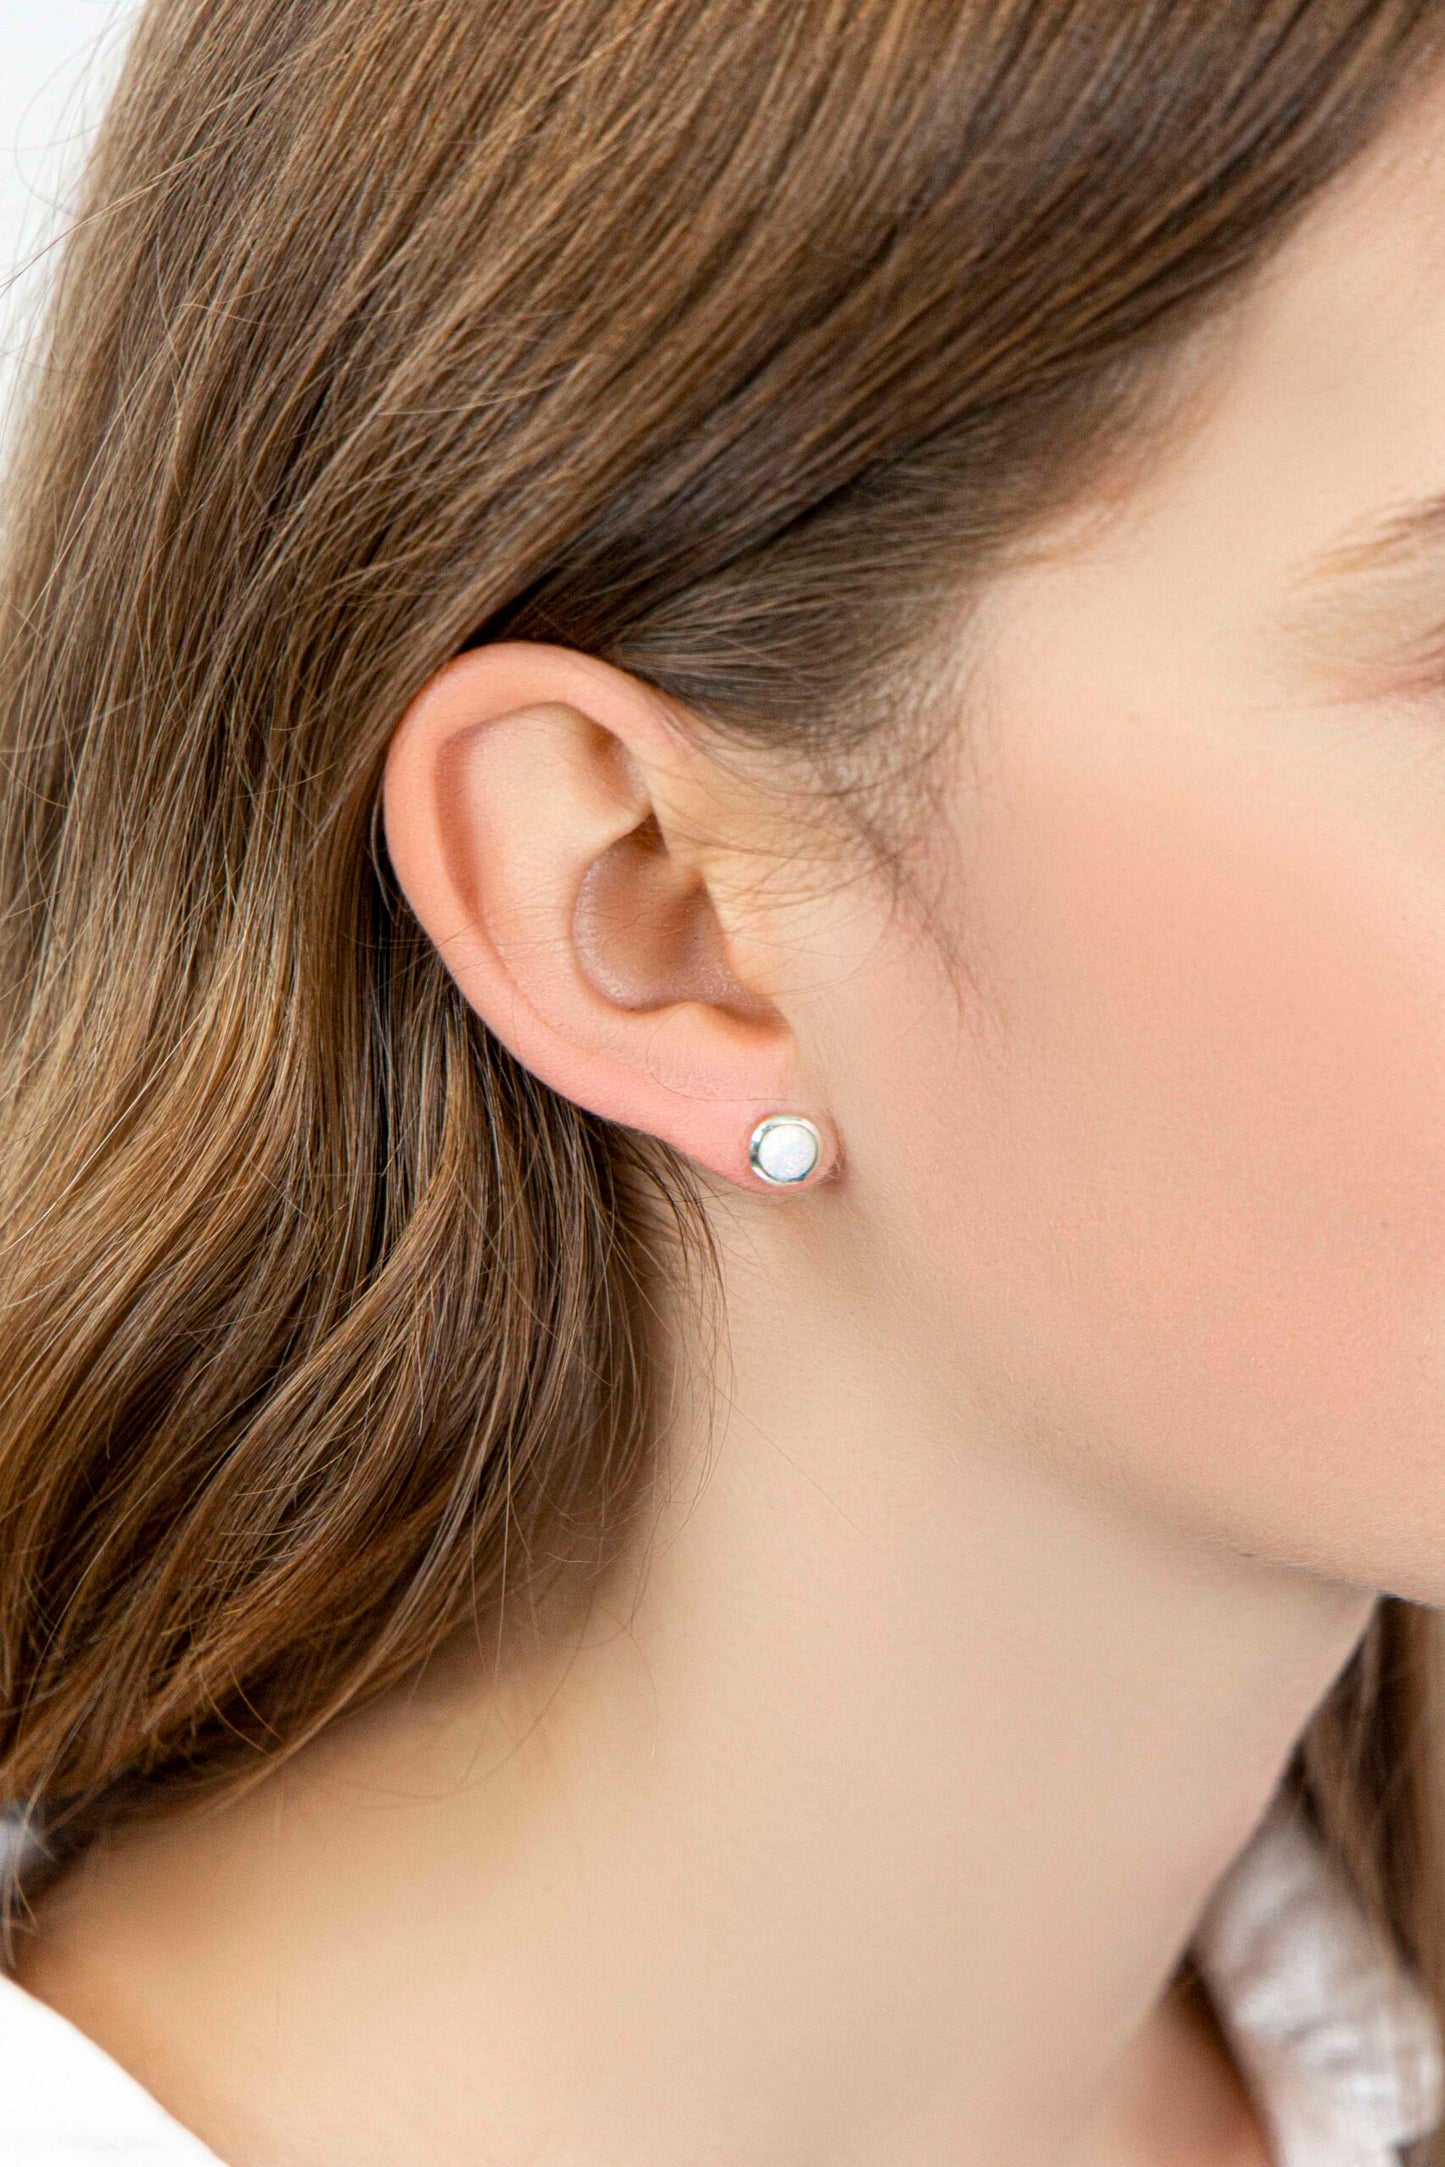 White Opalite studs - 7mm stud earrings